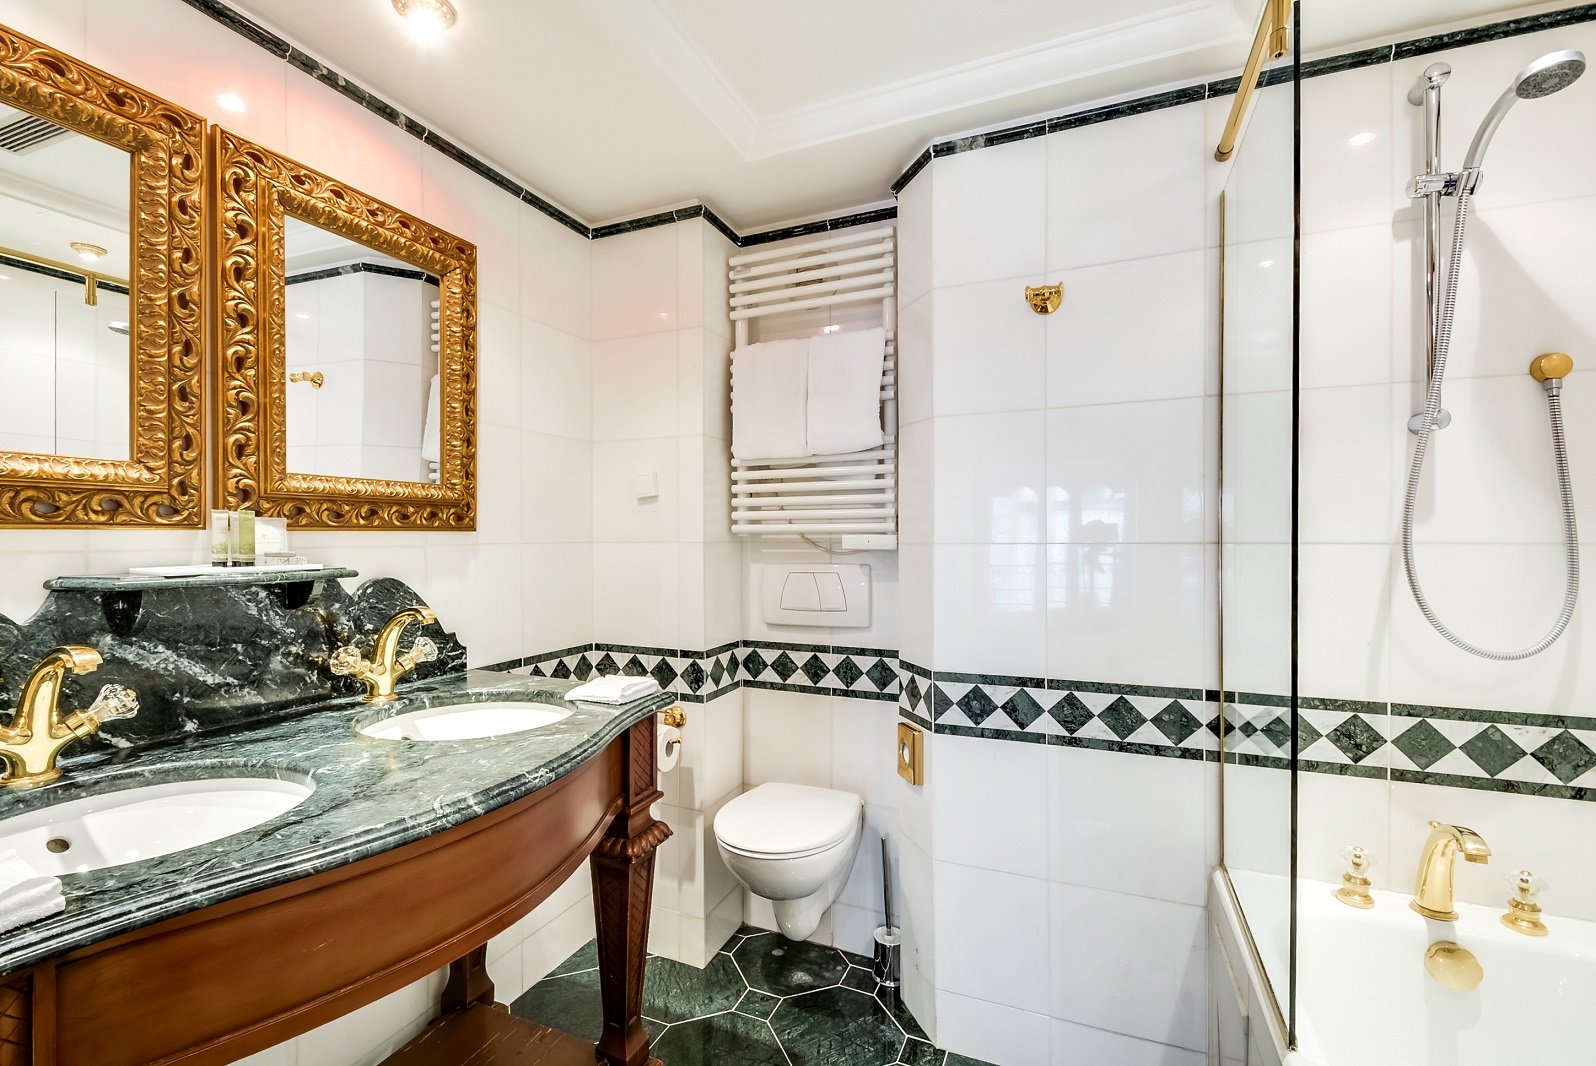 Villa Royale Pigalle Paris- Bathroom- 4 star hotel